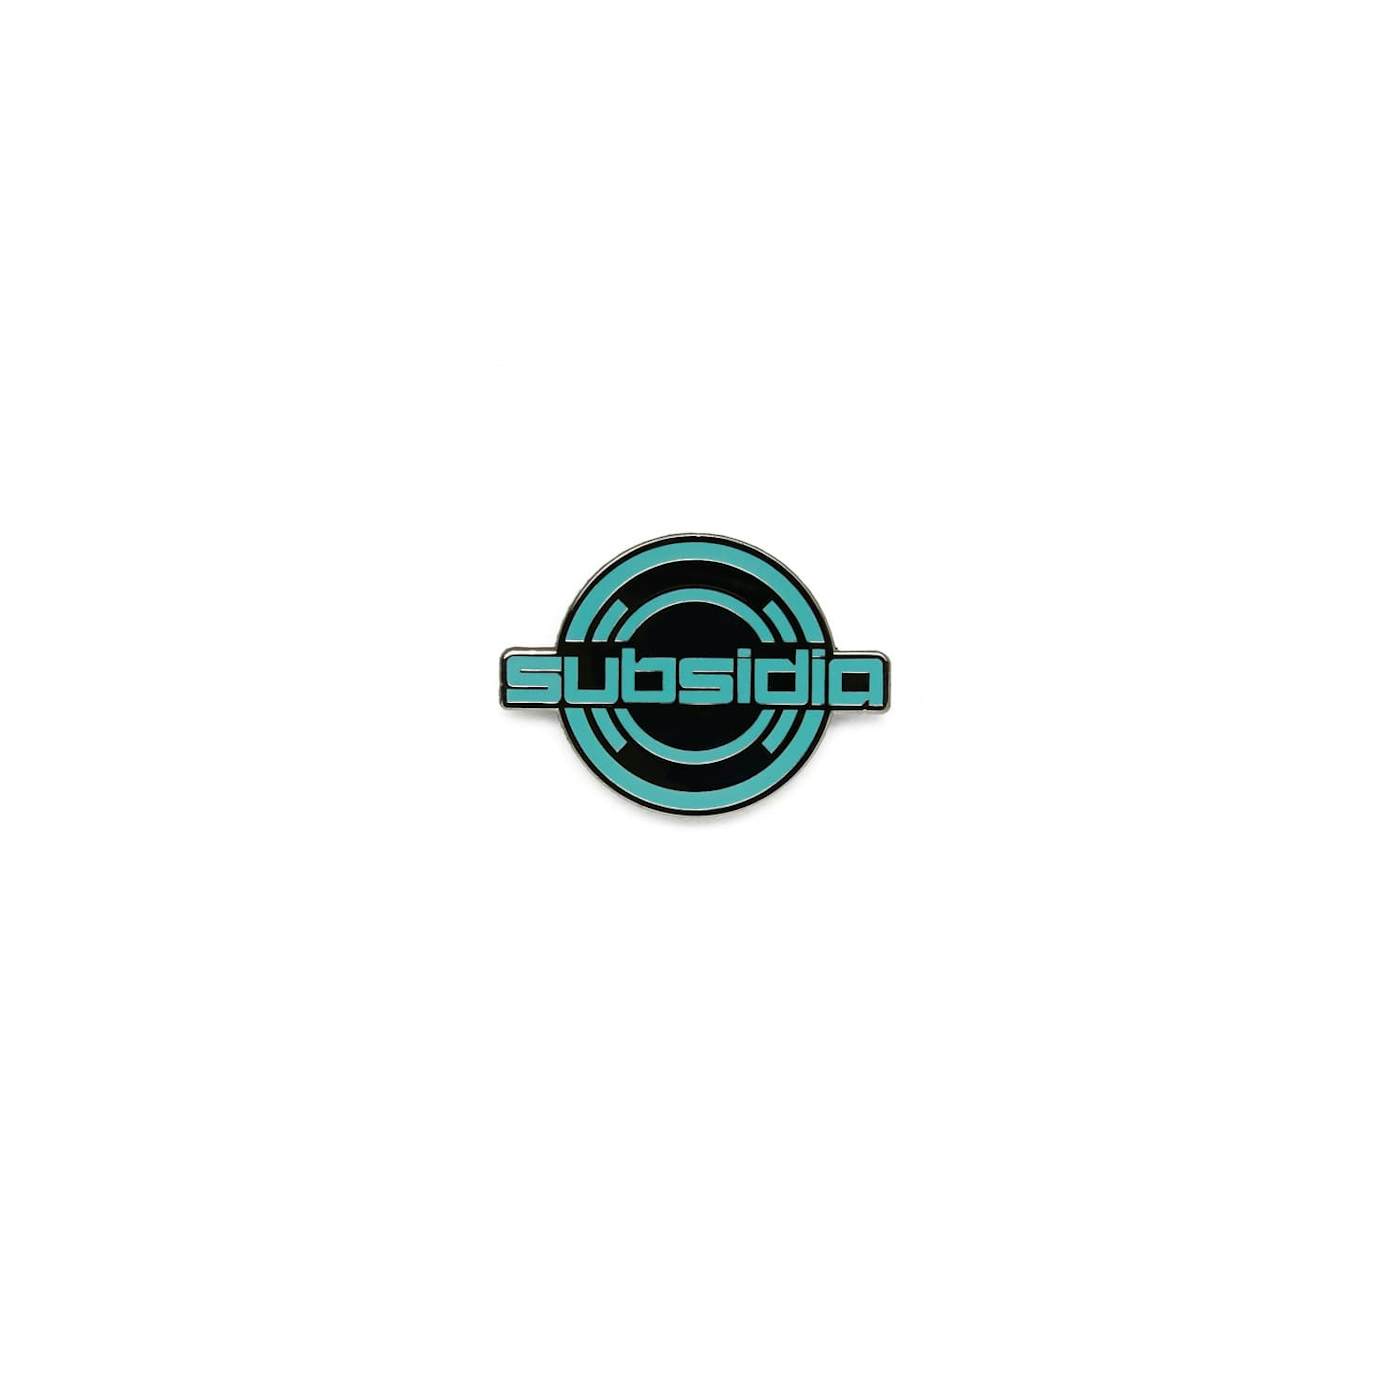 Excision 'Subsidia' Logo Pin